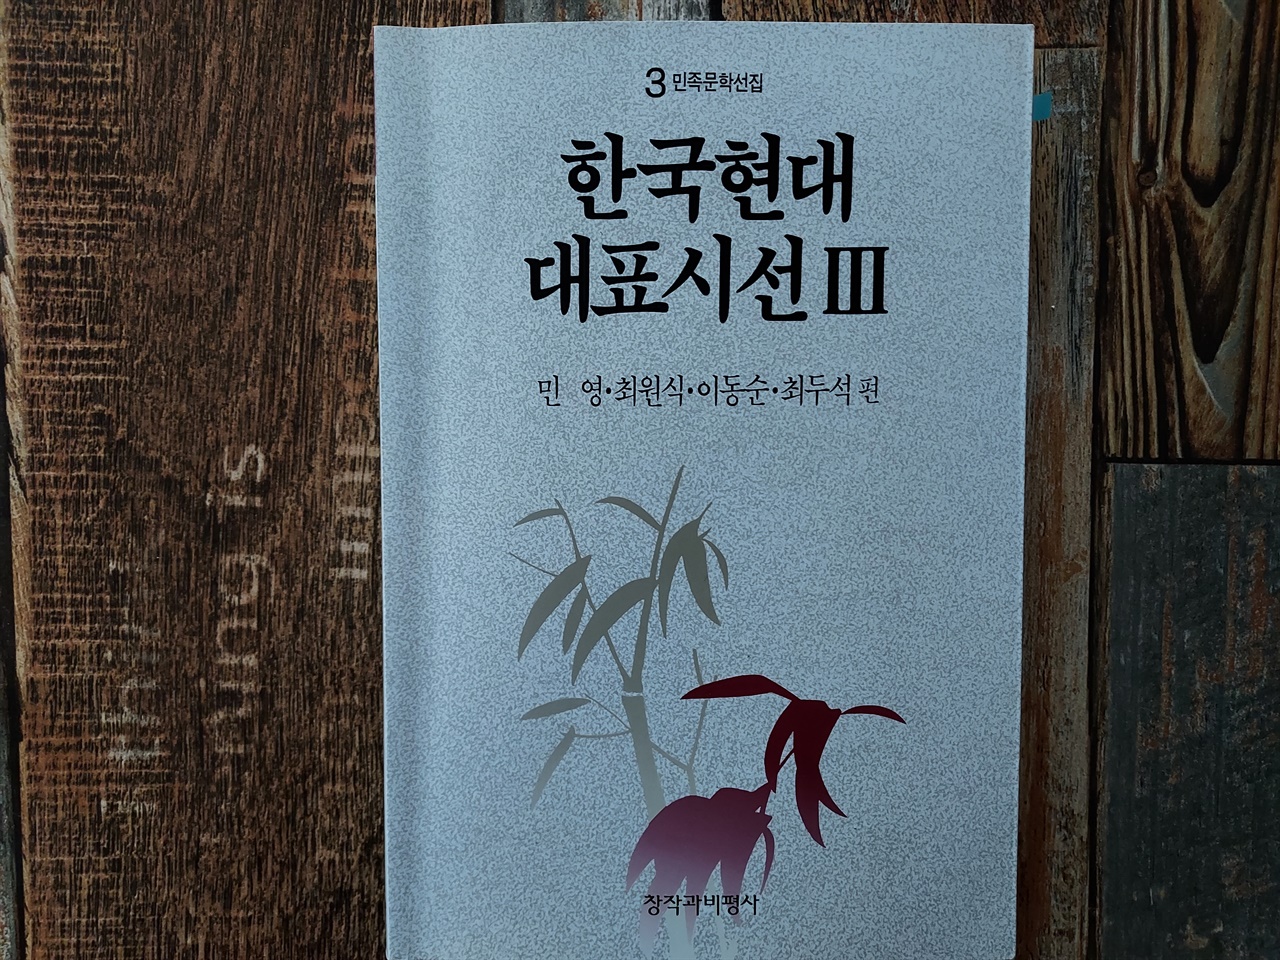 창작과비평사에서 출판한 <한국현대대표시선3>